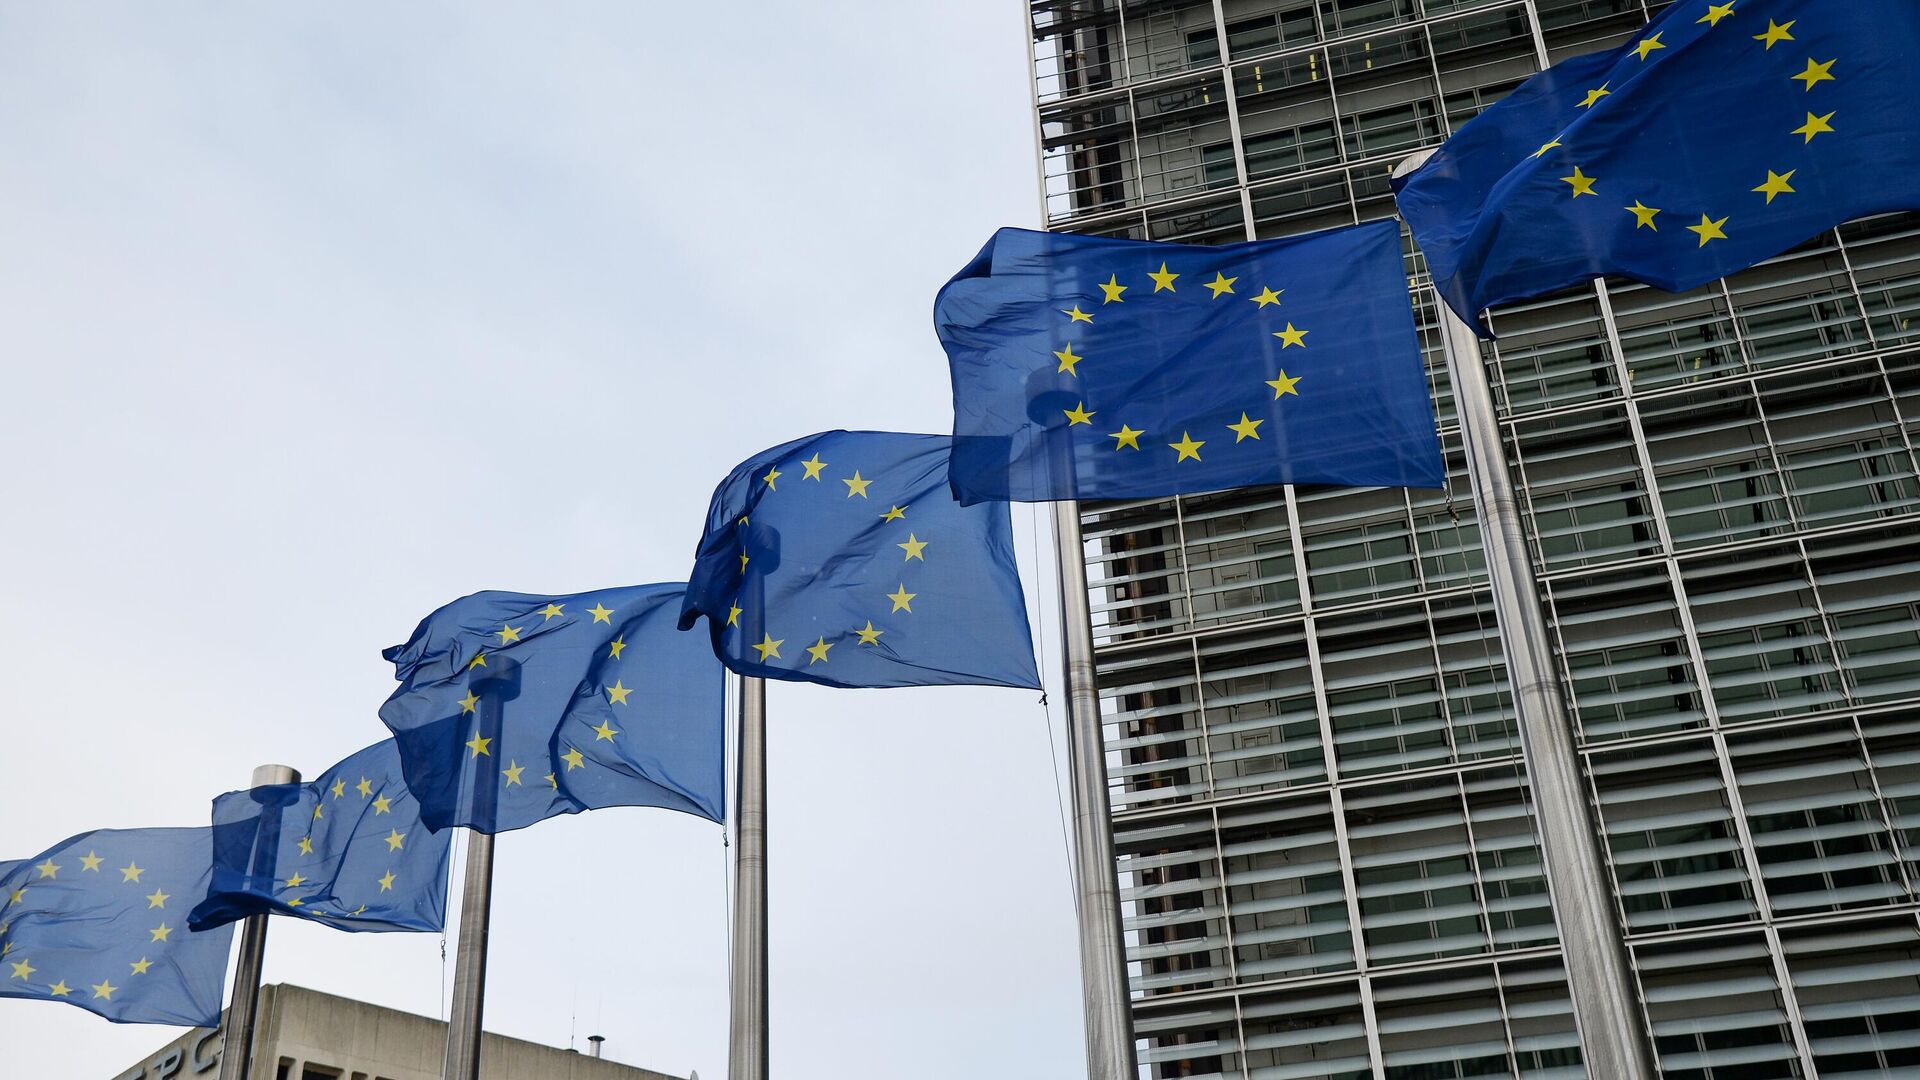 Флаги Евросоюза возле здания штаб-квартиры Европейского парламента в Брюсселе - РИА Новости, 1920, 25.10.2021